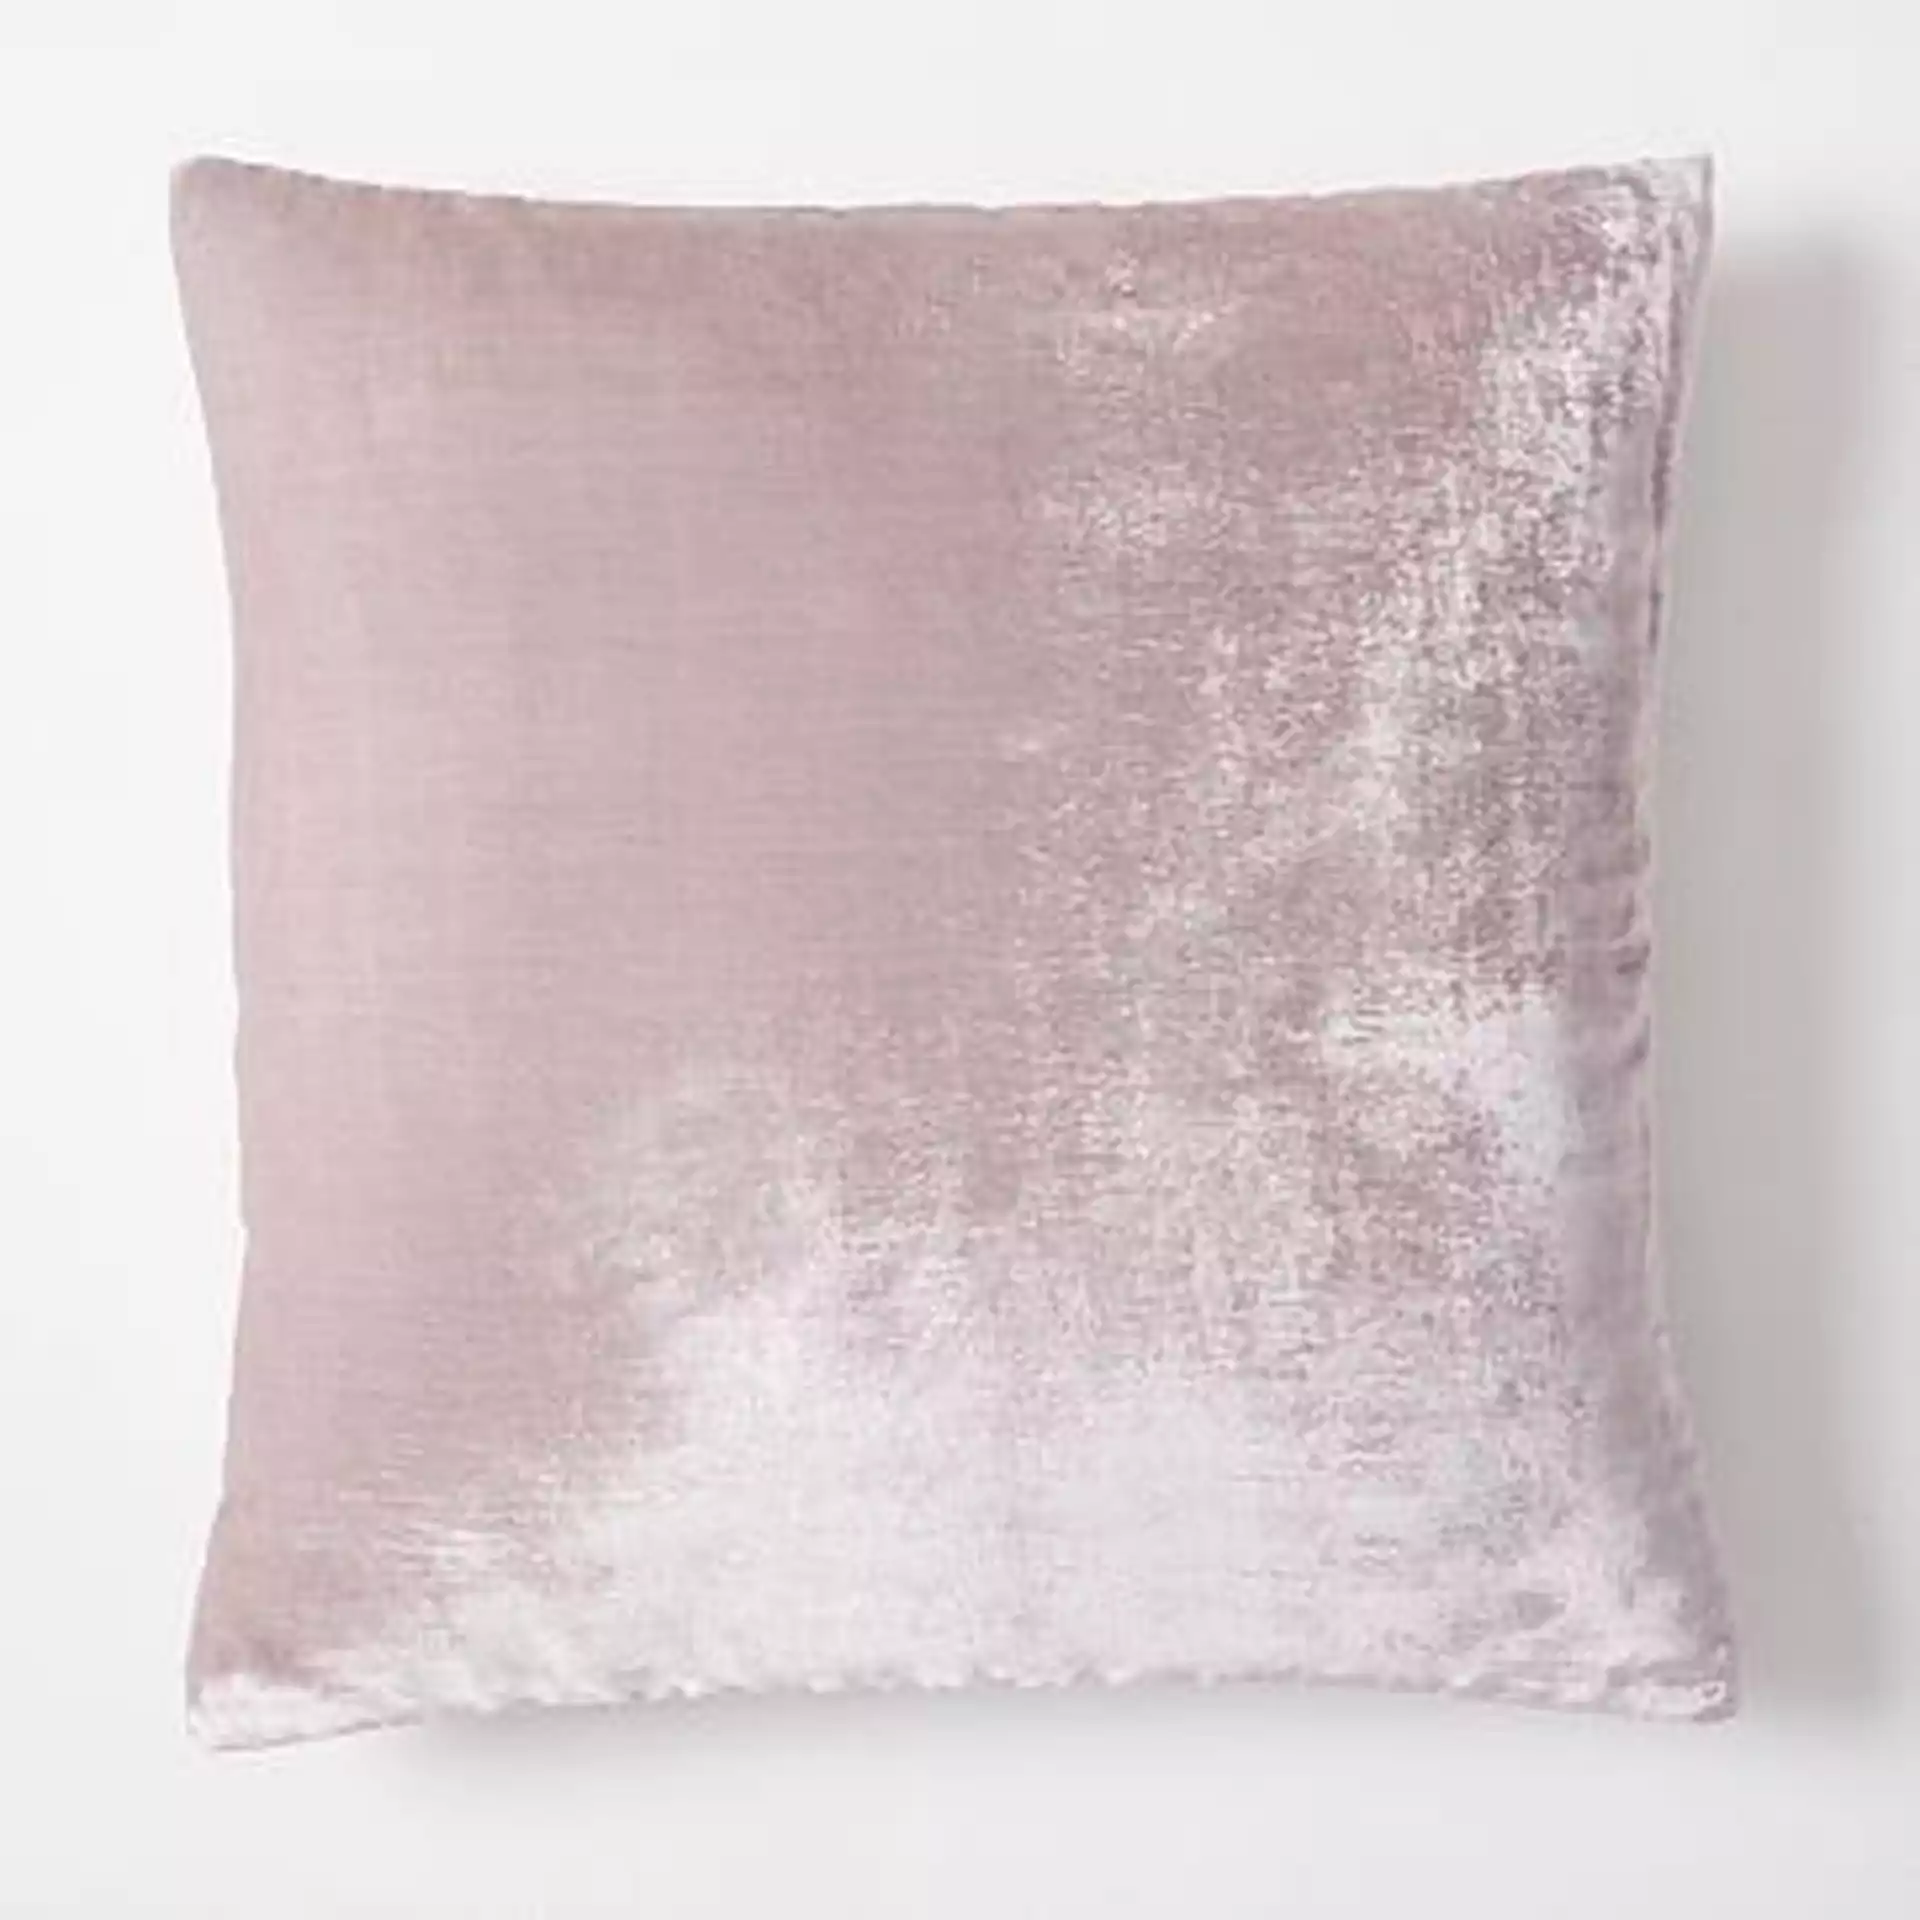 Lush Velvet Pillow Cover, 24"x24", Copper